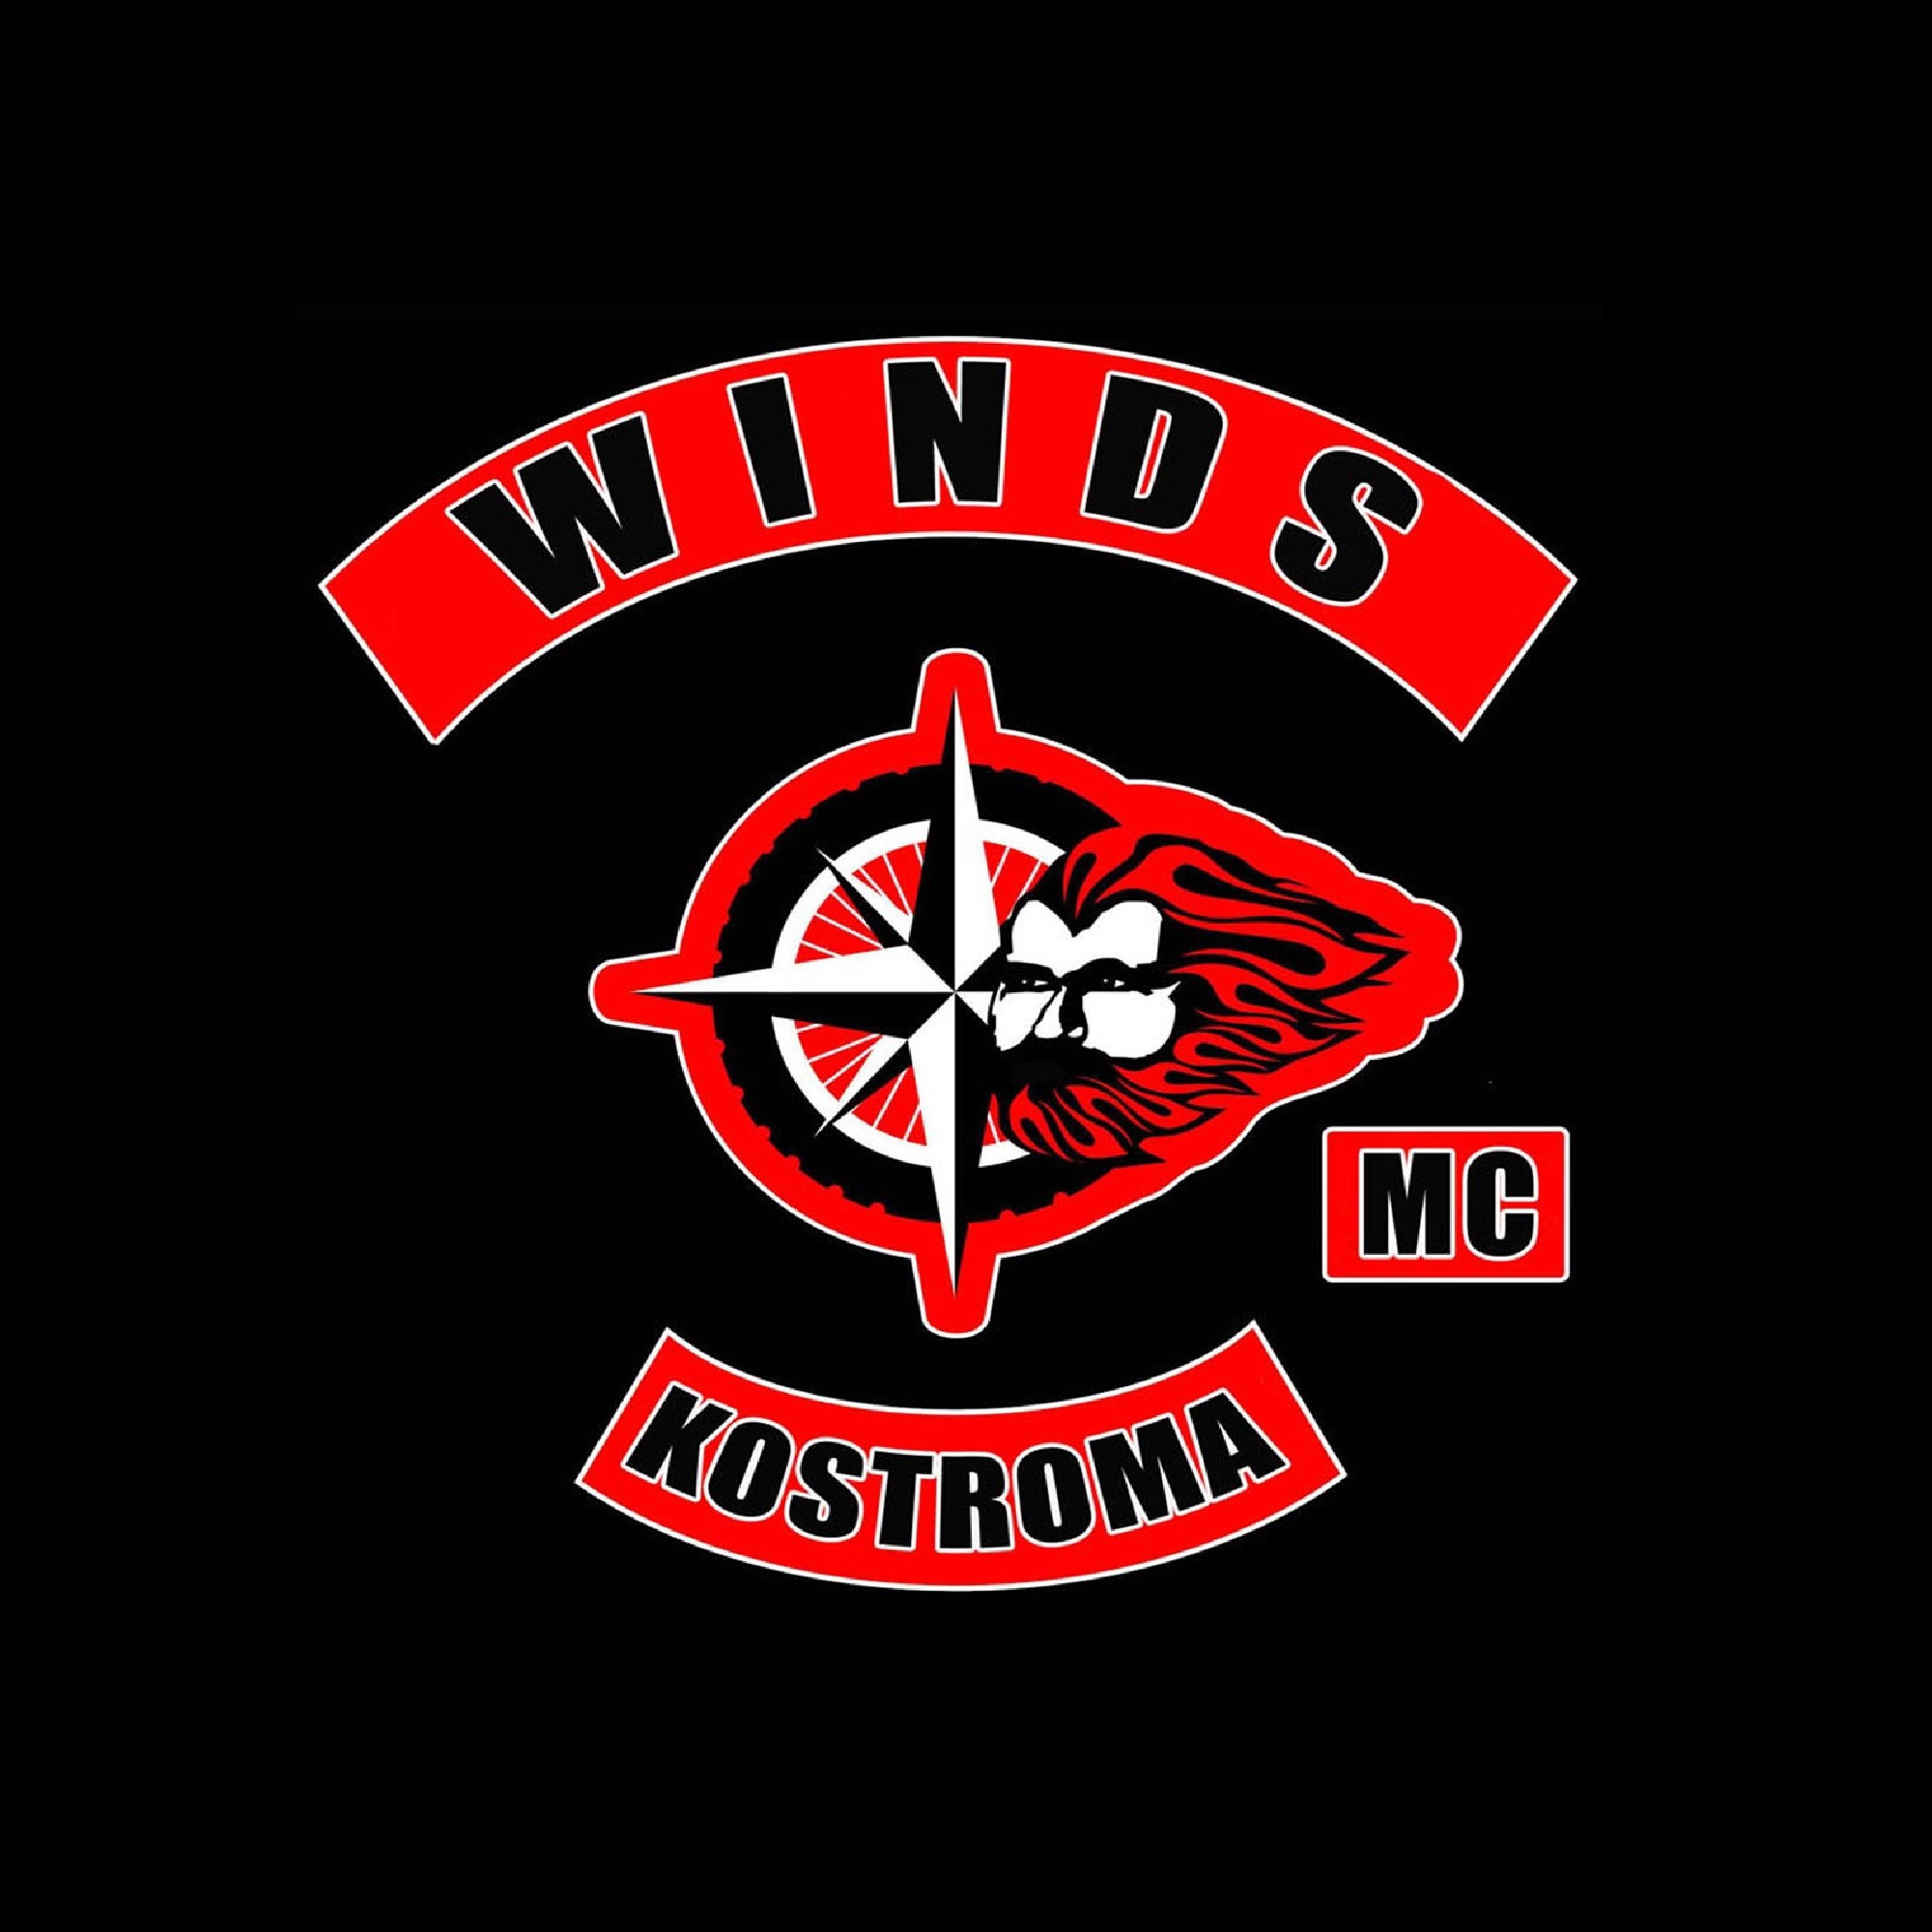 winds mc